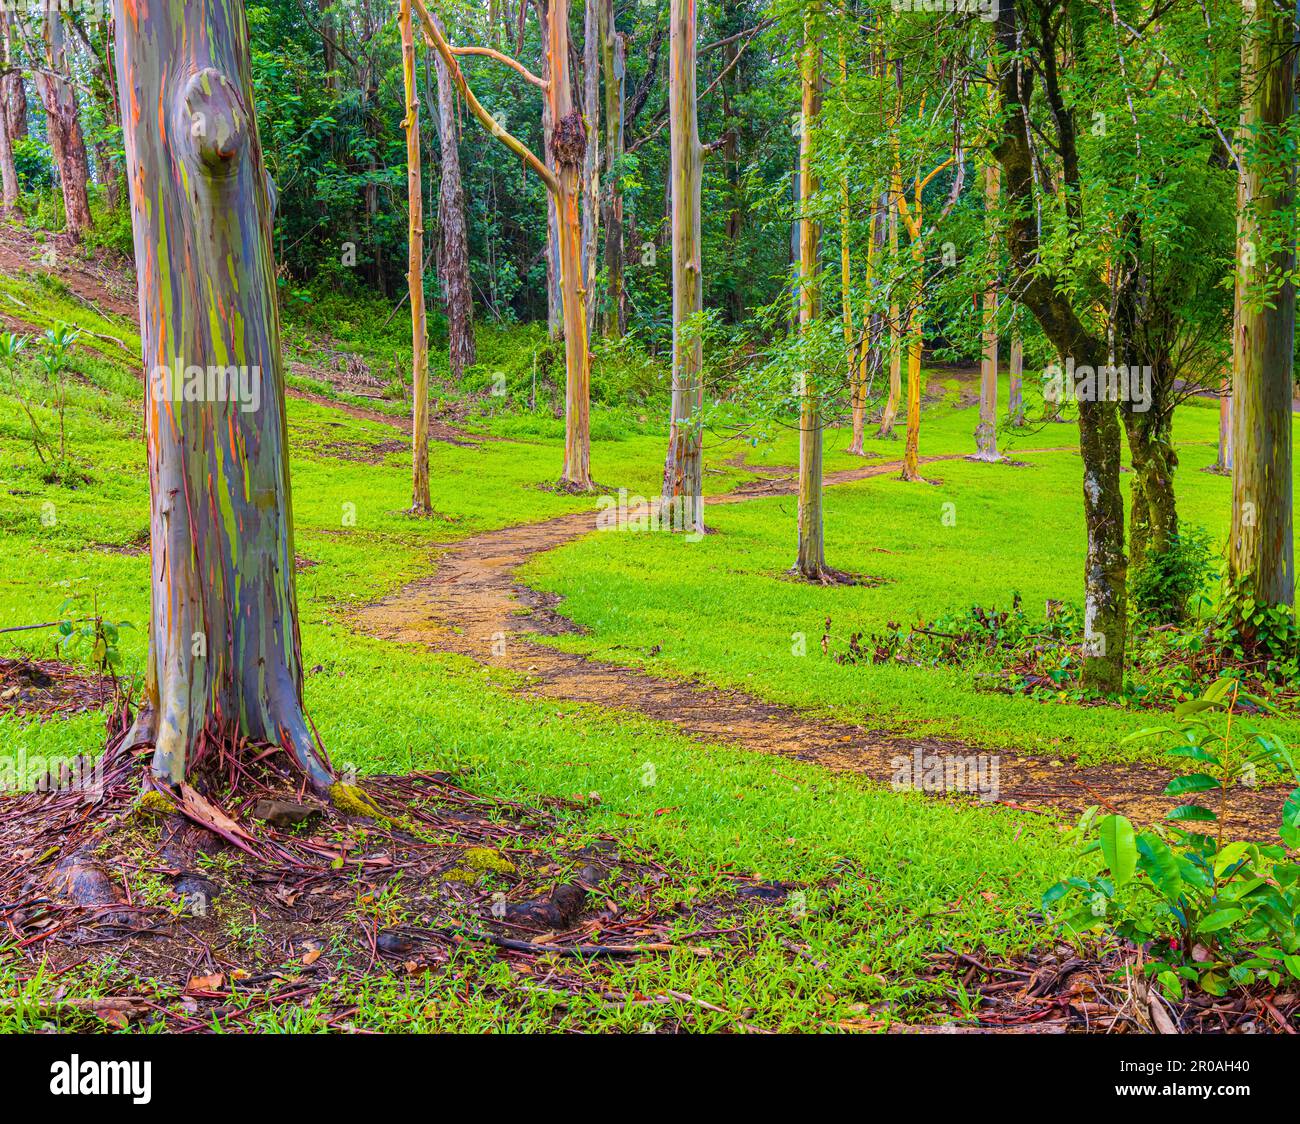 Sentier de randonnée à travers la forêt d'eucalyptus arc-en-ciel à l'arboretum Keahua, Kauai, Hawaii, États-Unis Banque D'Images